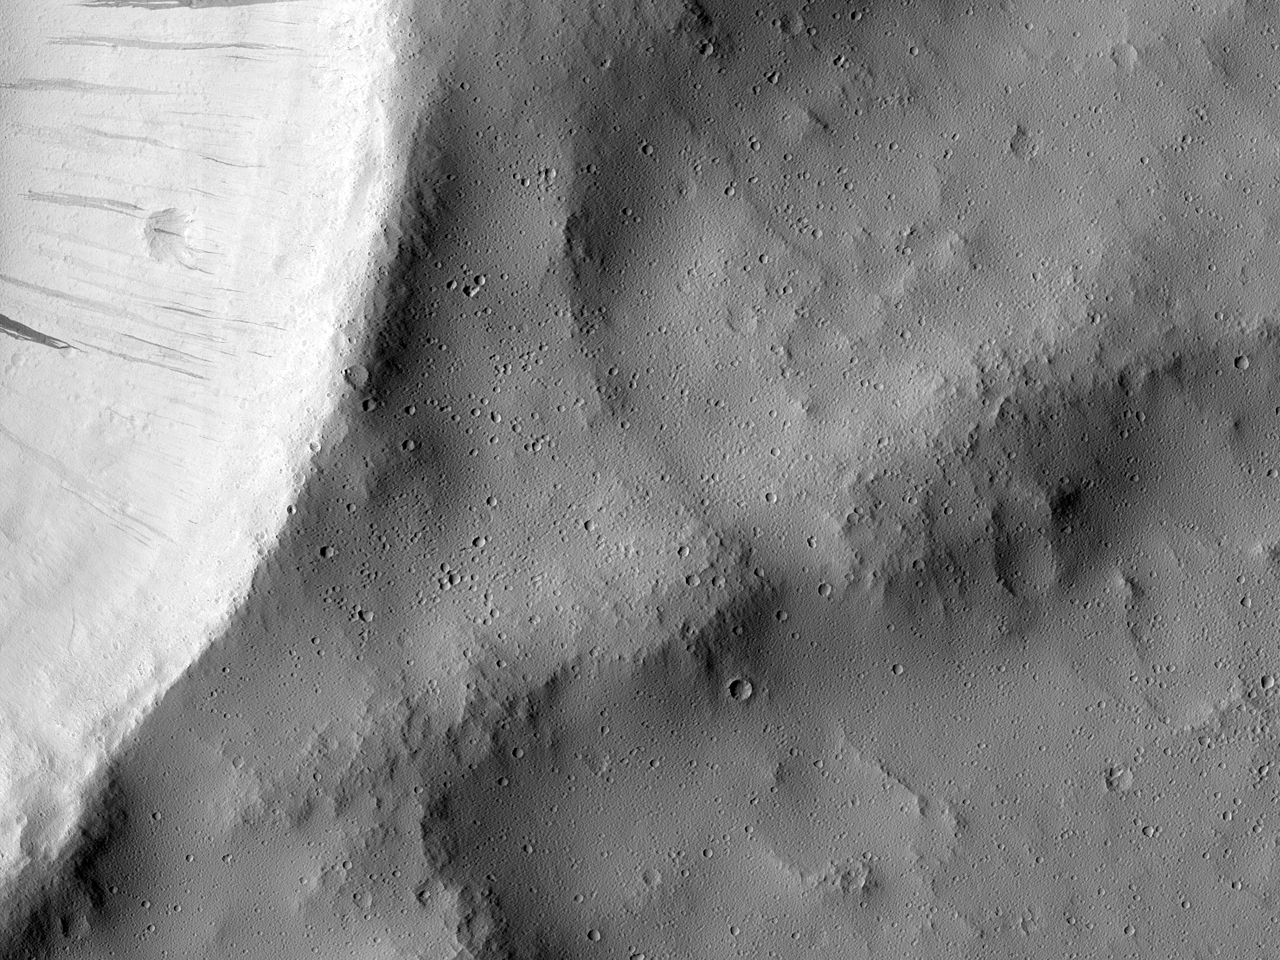 Interseo de uma plataforma ejetada com a borda de uma cratera